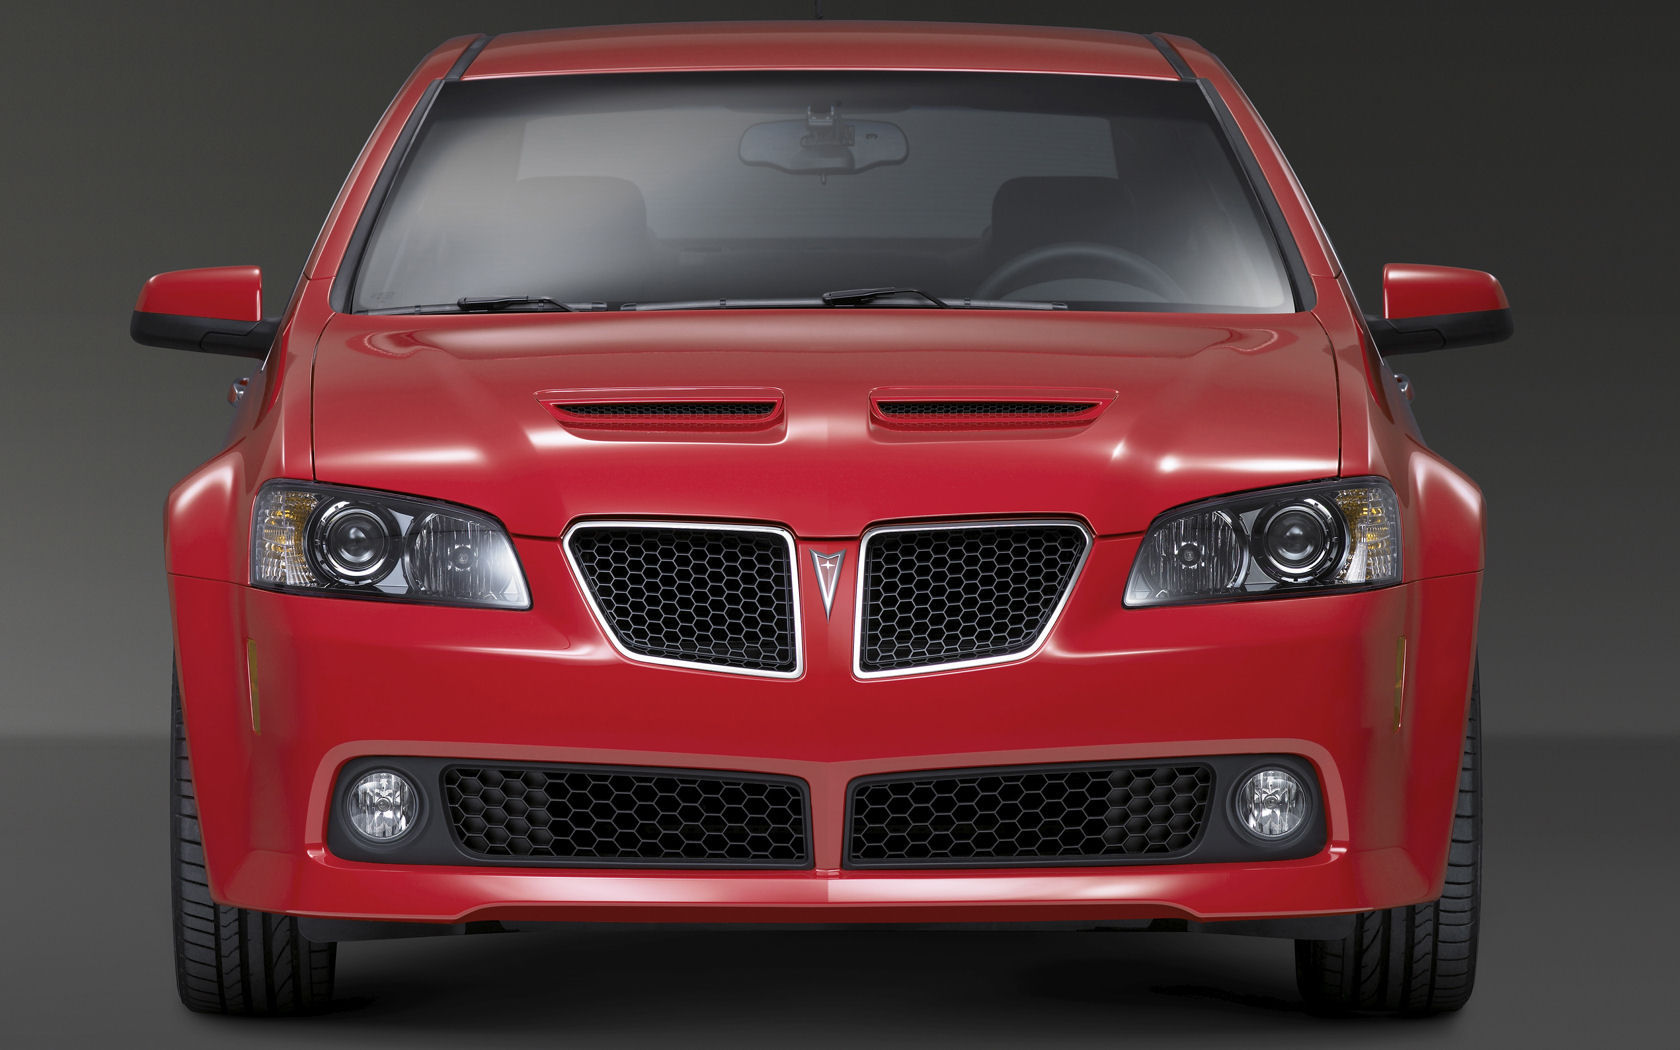 2008 Pontiac g8